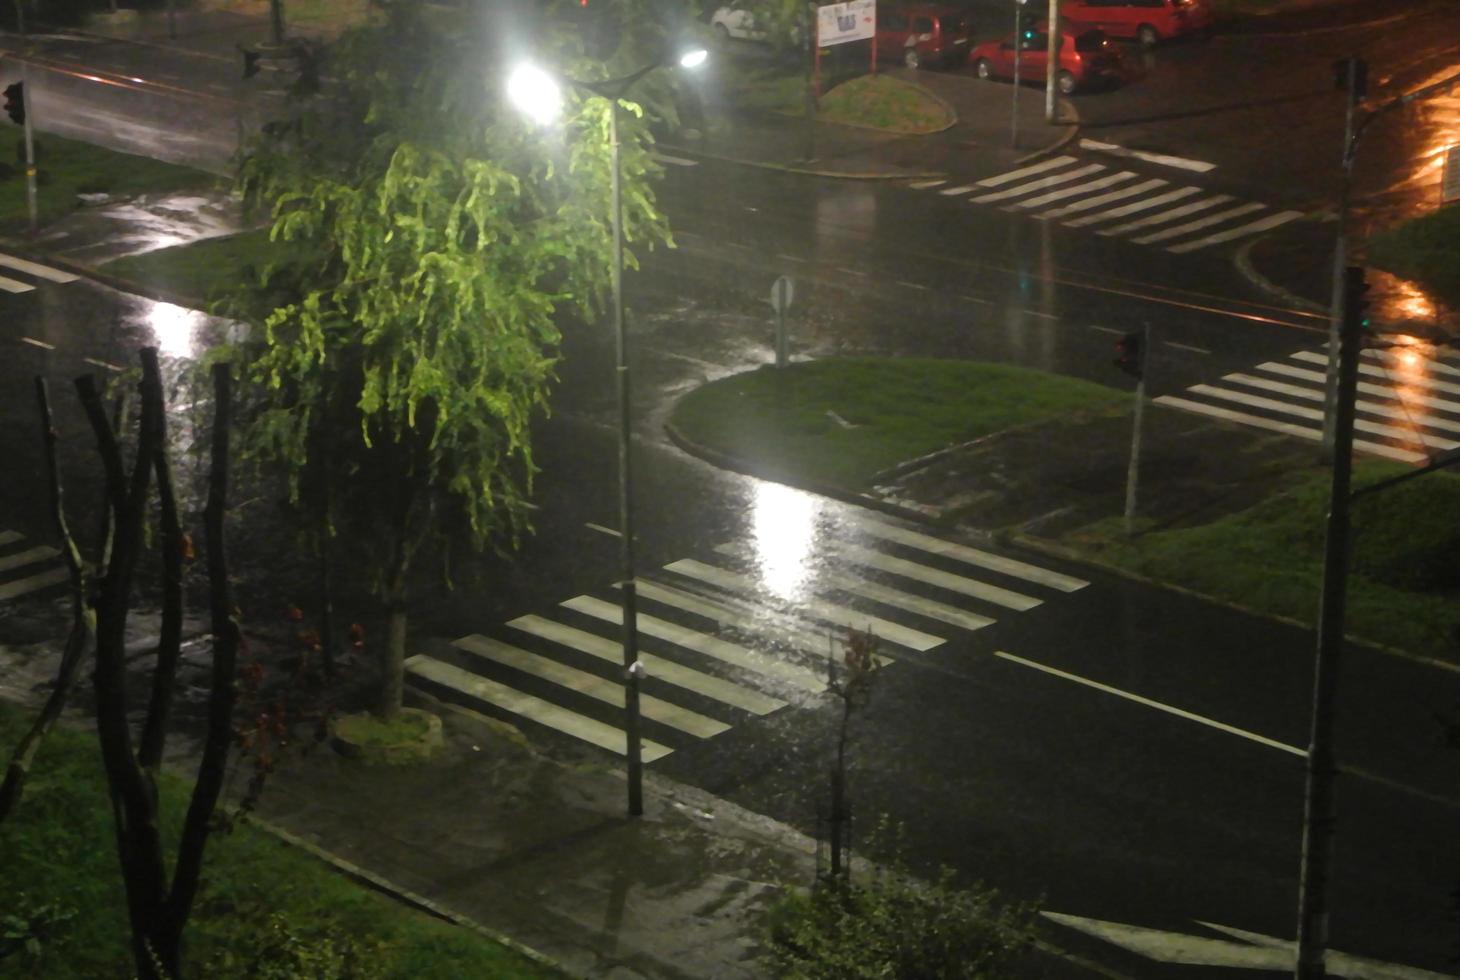 straat Aan een regenachtig dag, servië, Belgrado, 15.9.2022 foto